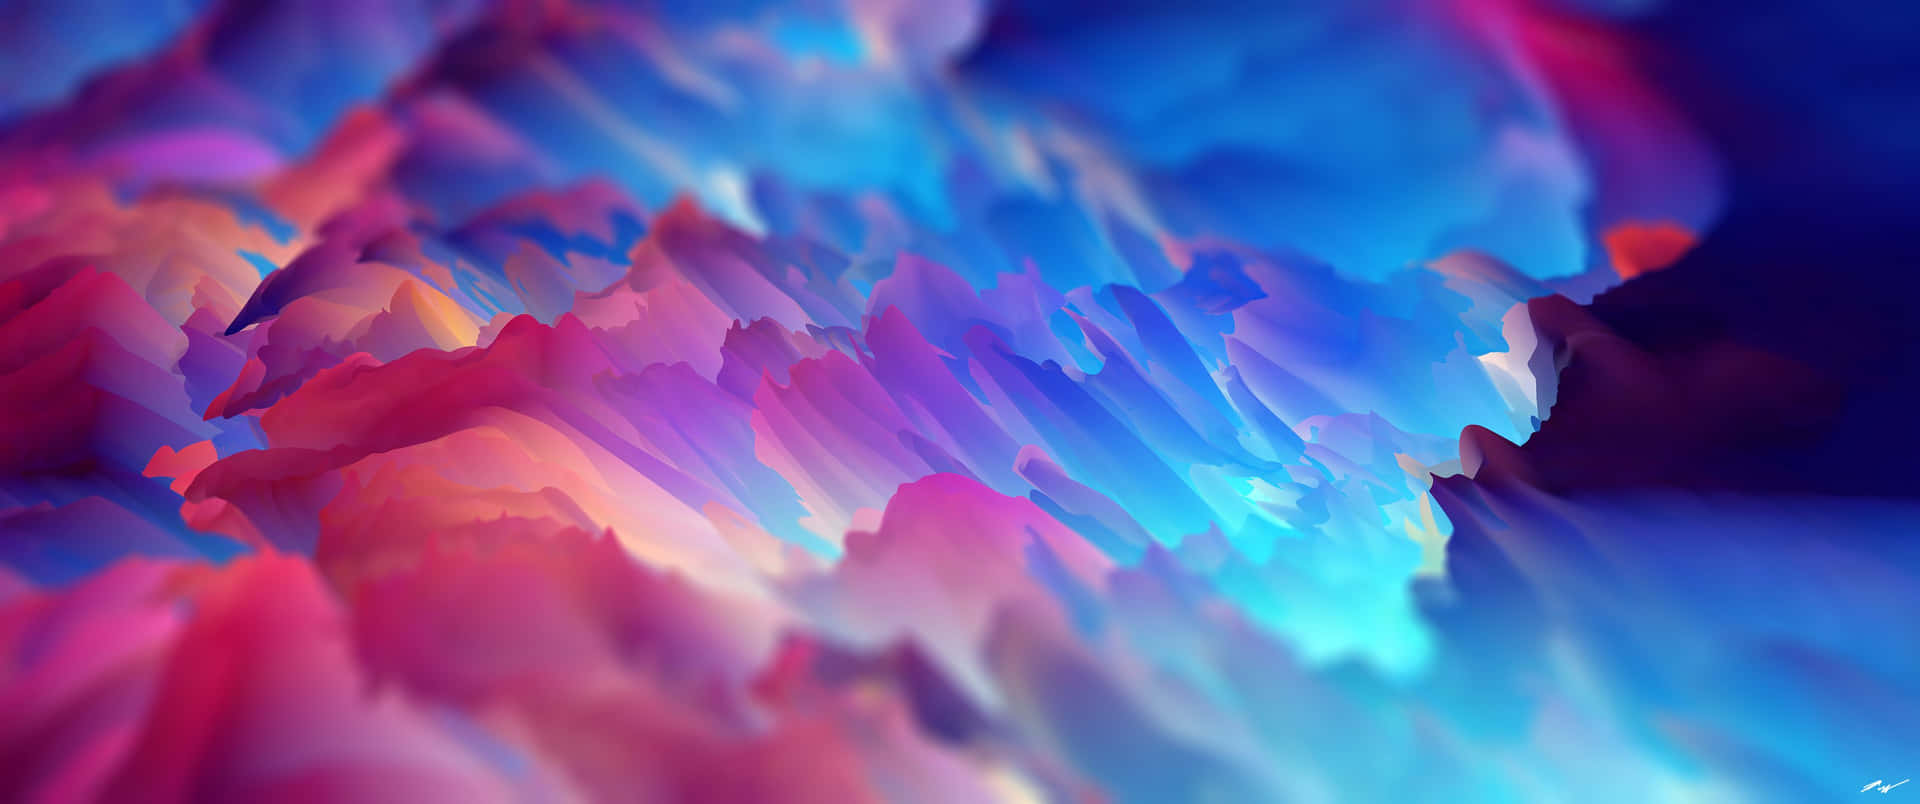 A Burst of Color Wallpaper